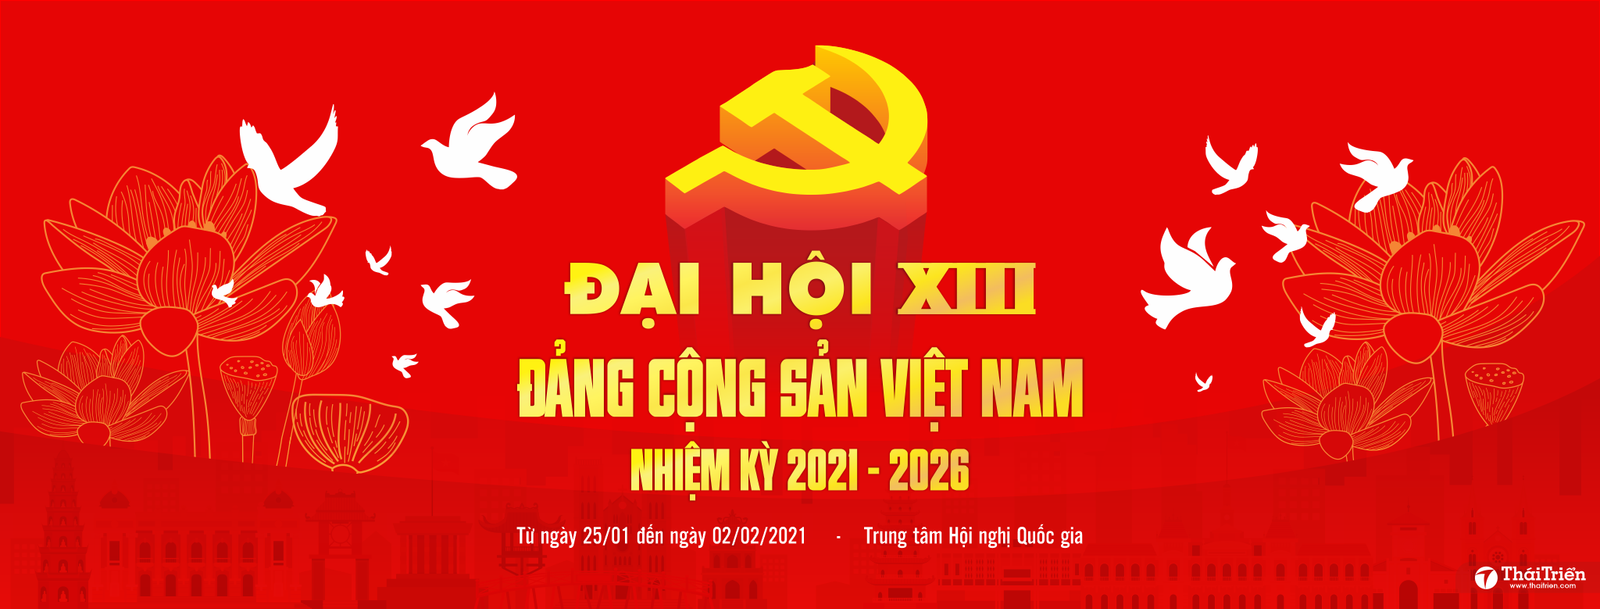 Đại hội Đảng toàn quốc lần thứ XIII: Cùng đón chờ sự kiện quan trọng này cùng hàng triệu người dân Việt Nam. Đại hội Đảng sẽ đưa ra những chính sách và quyết định quan trọng cho sự phát triển của đất nước. Hãy cùng đón xem các hoạt động đầy ý nghĩa trong sự kiện này.